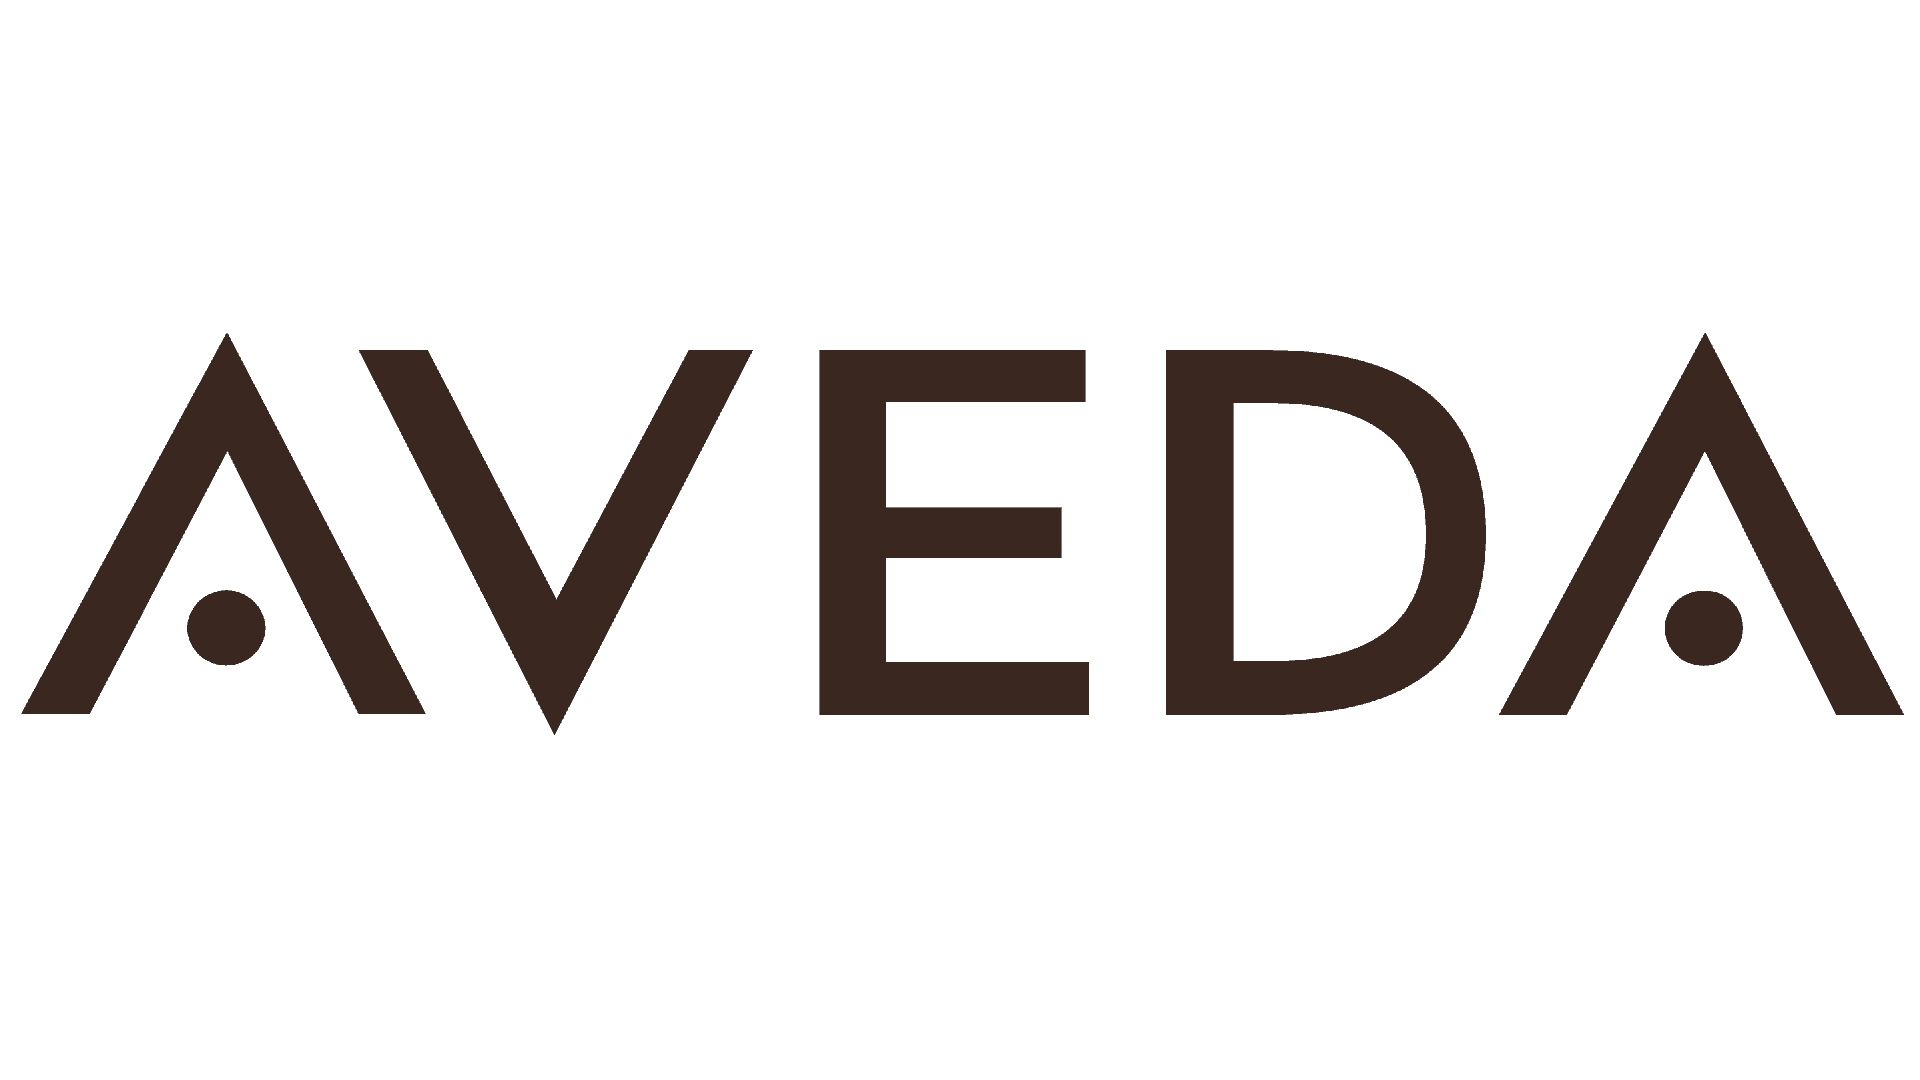 logo for Aveda